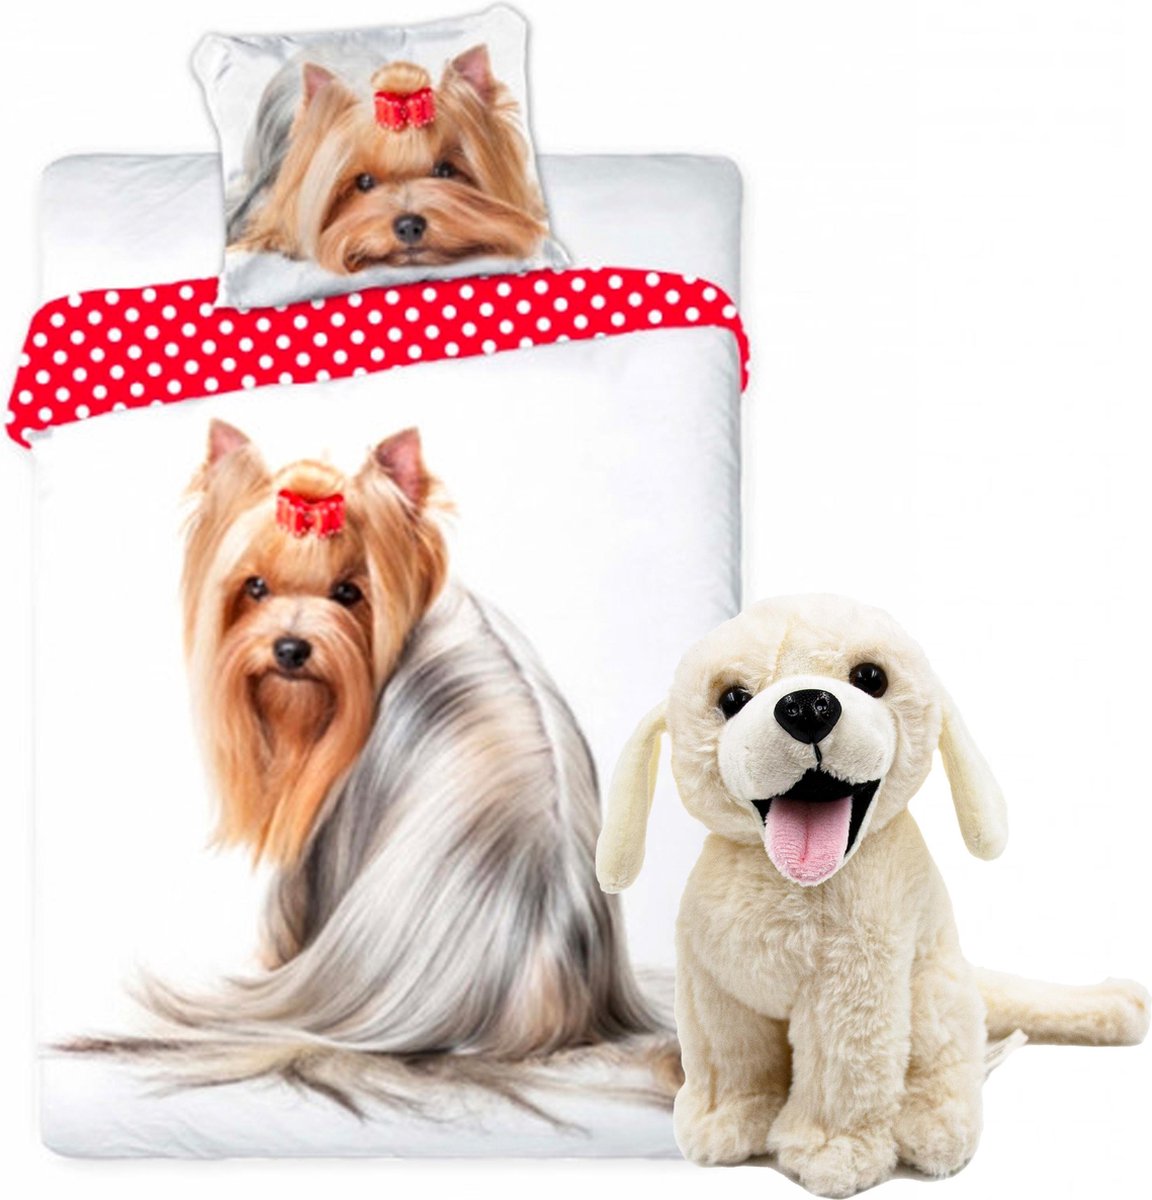 Honden dekbedovertrek set 140 x 200 cm, incl. super zachte witte Labrador knuffel 20 cm , kinderen slaapkamer eenpersoons dekbedovertrek